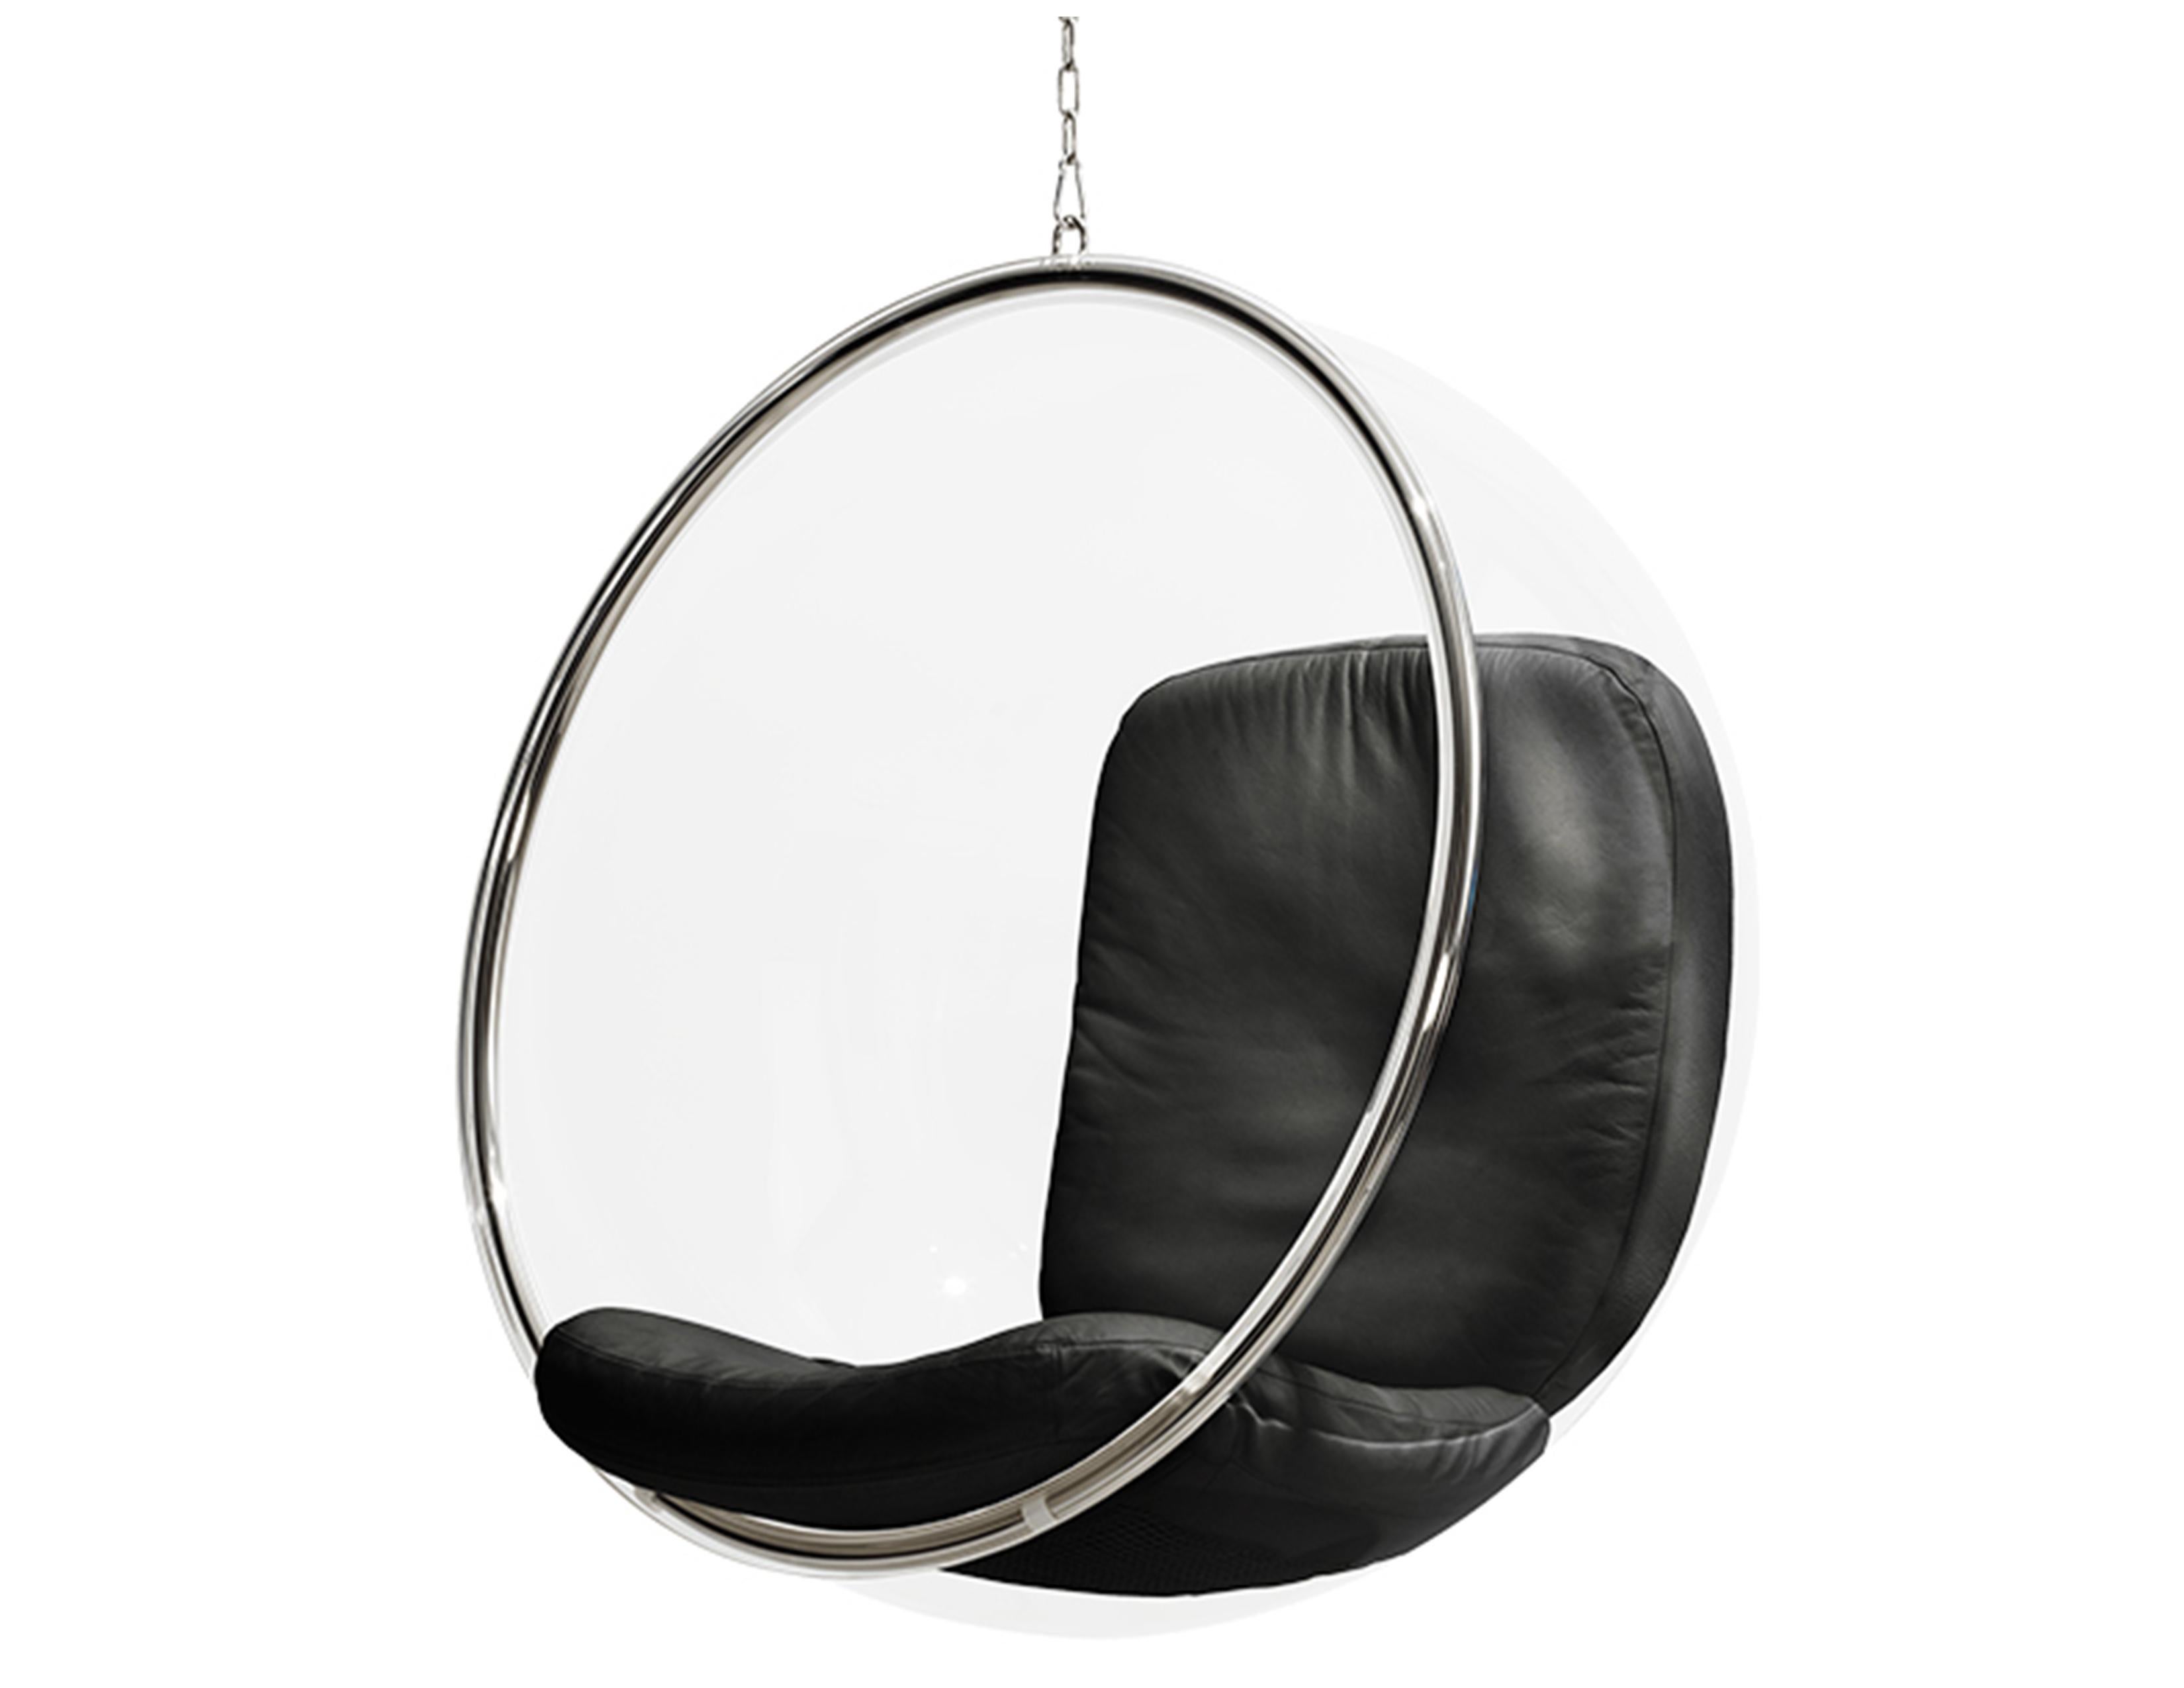 Der Bubble Chair wurde 1968 von Eero Aarnio entworfen. Laut Eeros Notizen hängt die Blase von der Decke, weil es keine schöne Möglichkeit gibt, einen klaren Sockel zu bauen